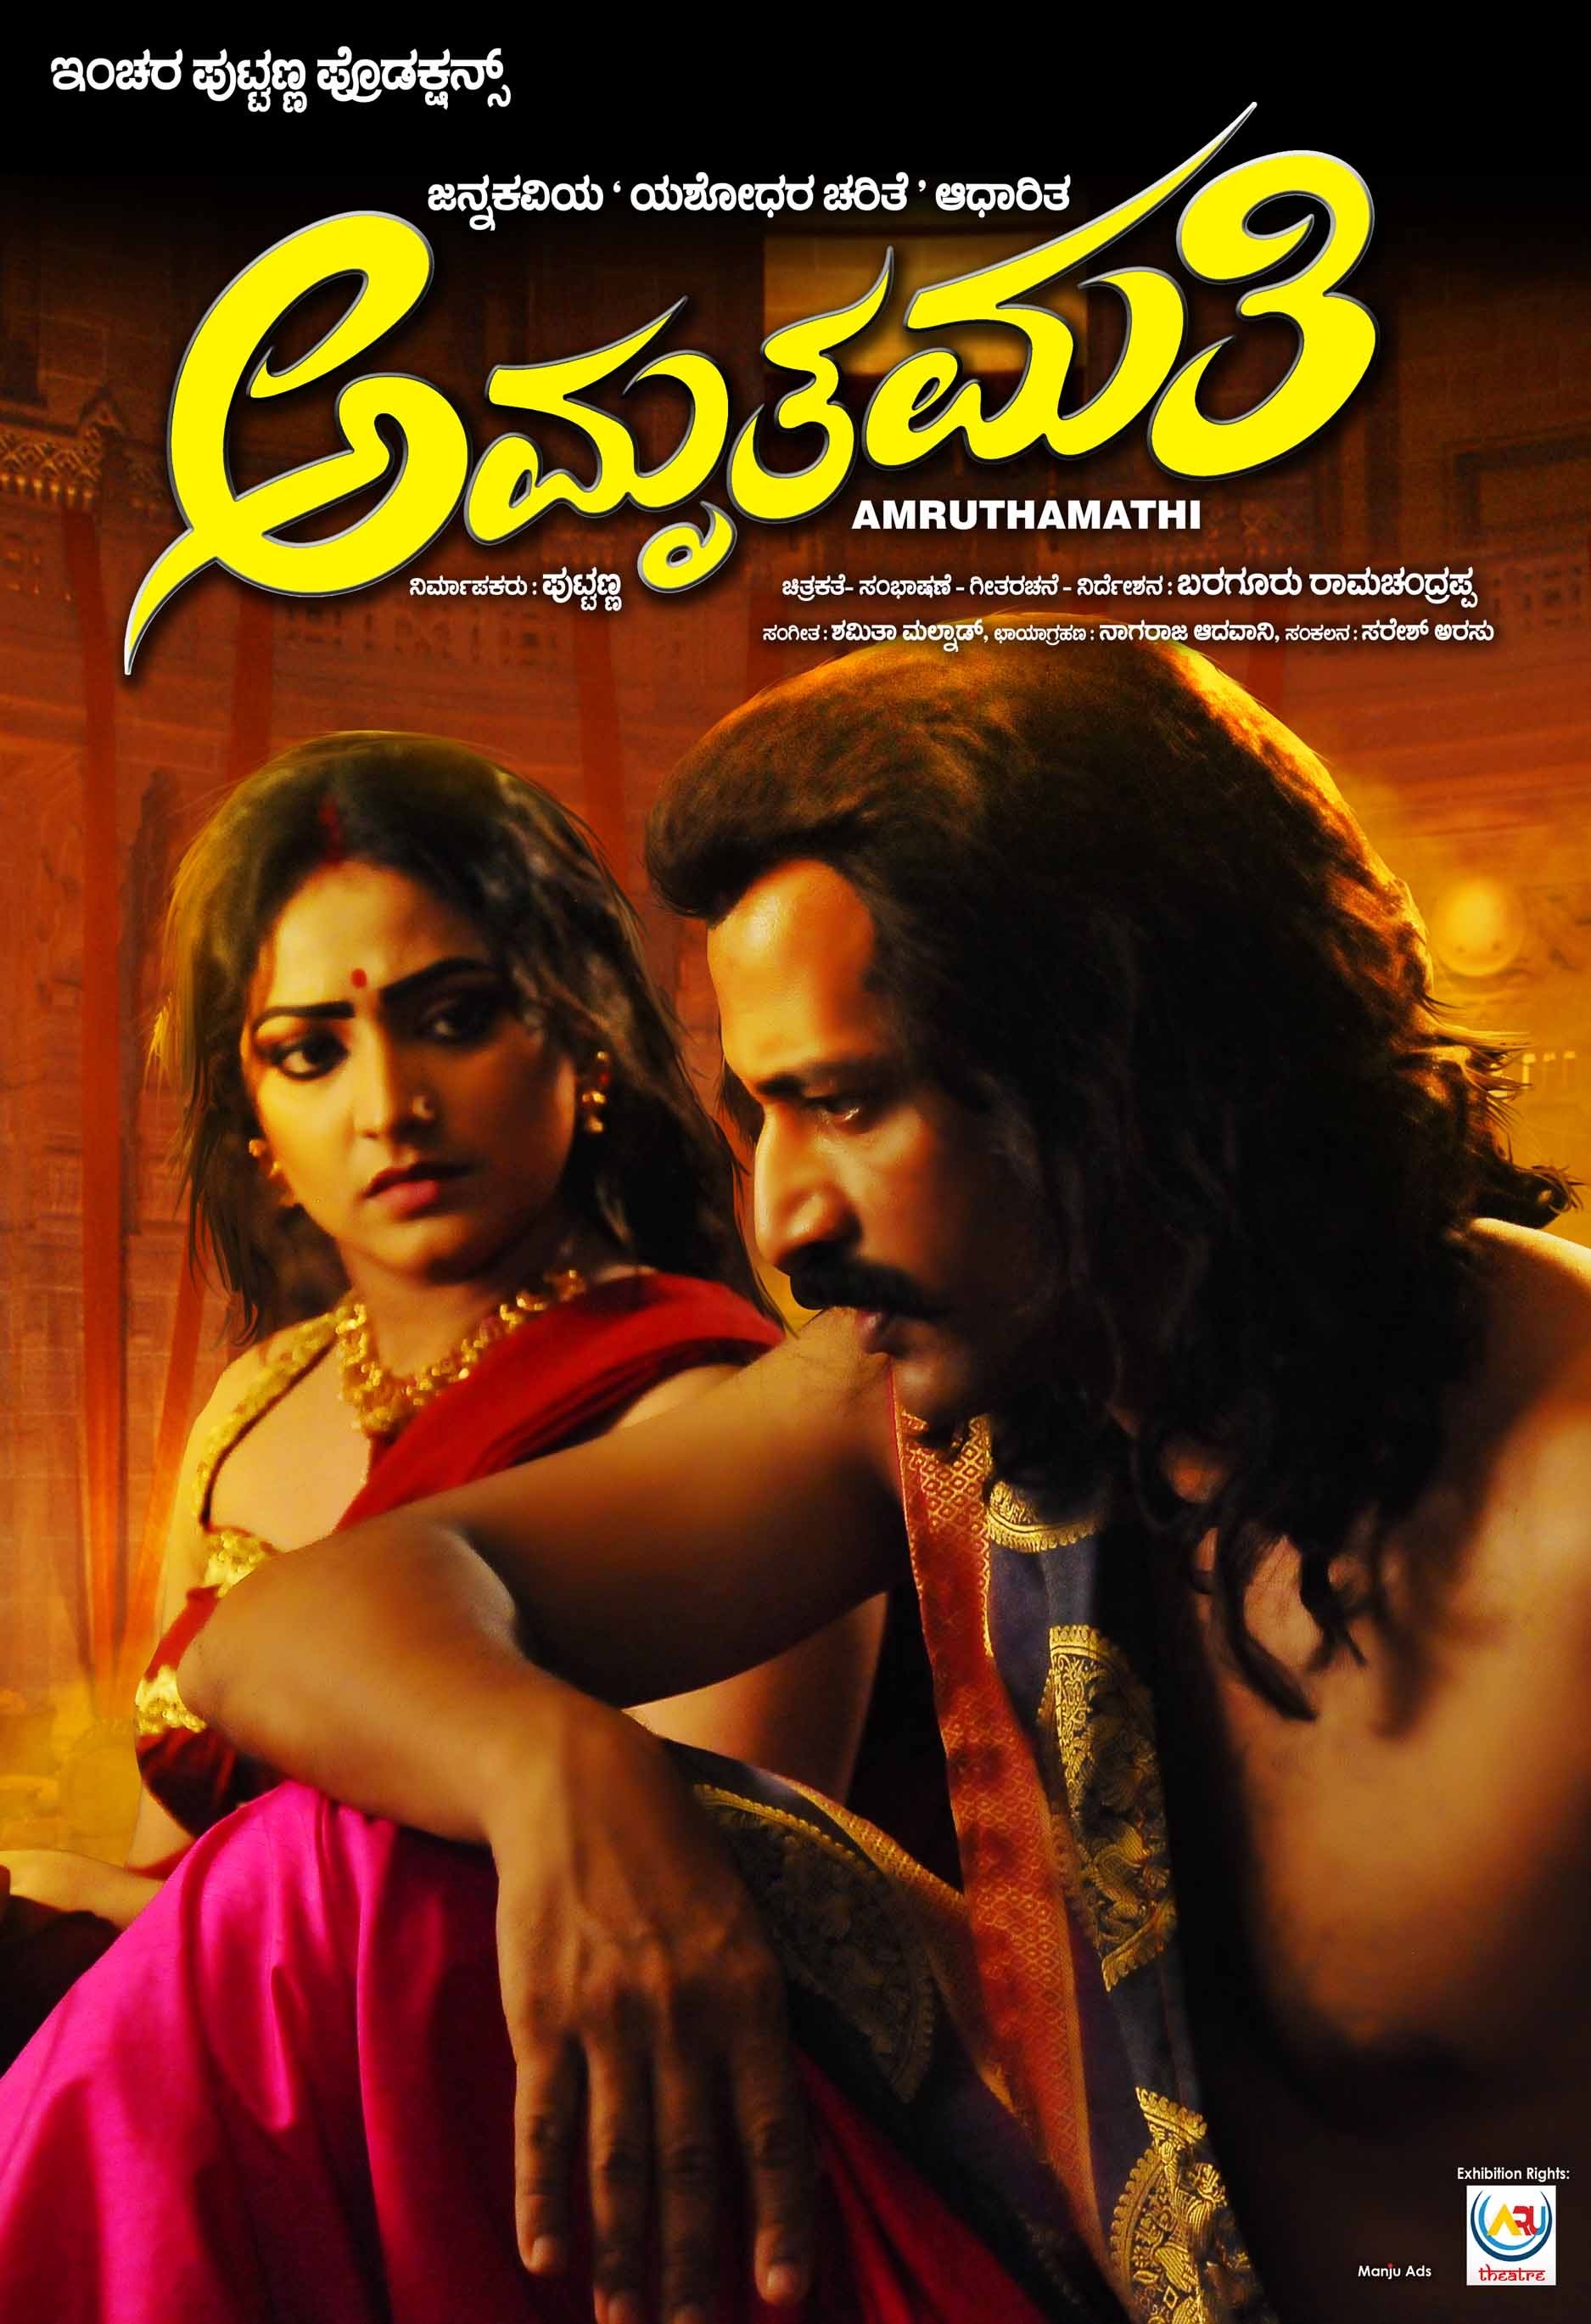 Mega Sized Movie Poster Image for Amruthamathi (#7 of 10)